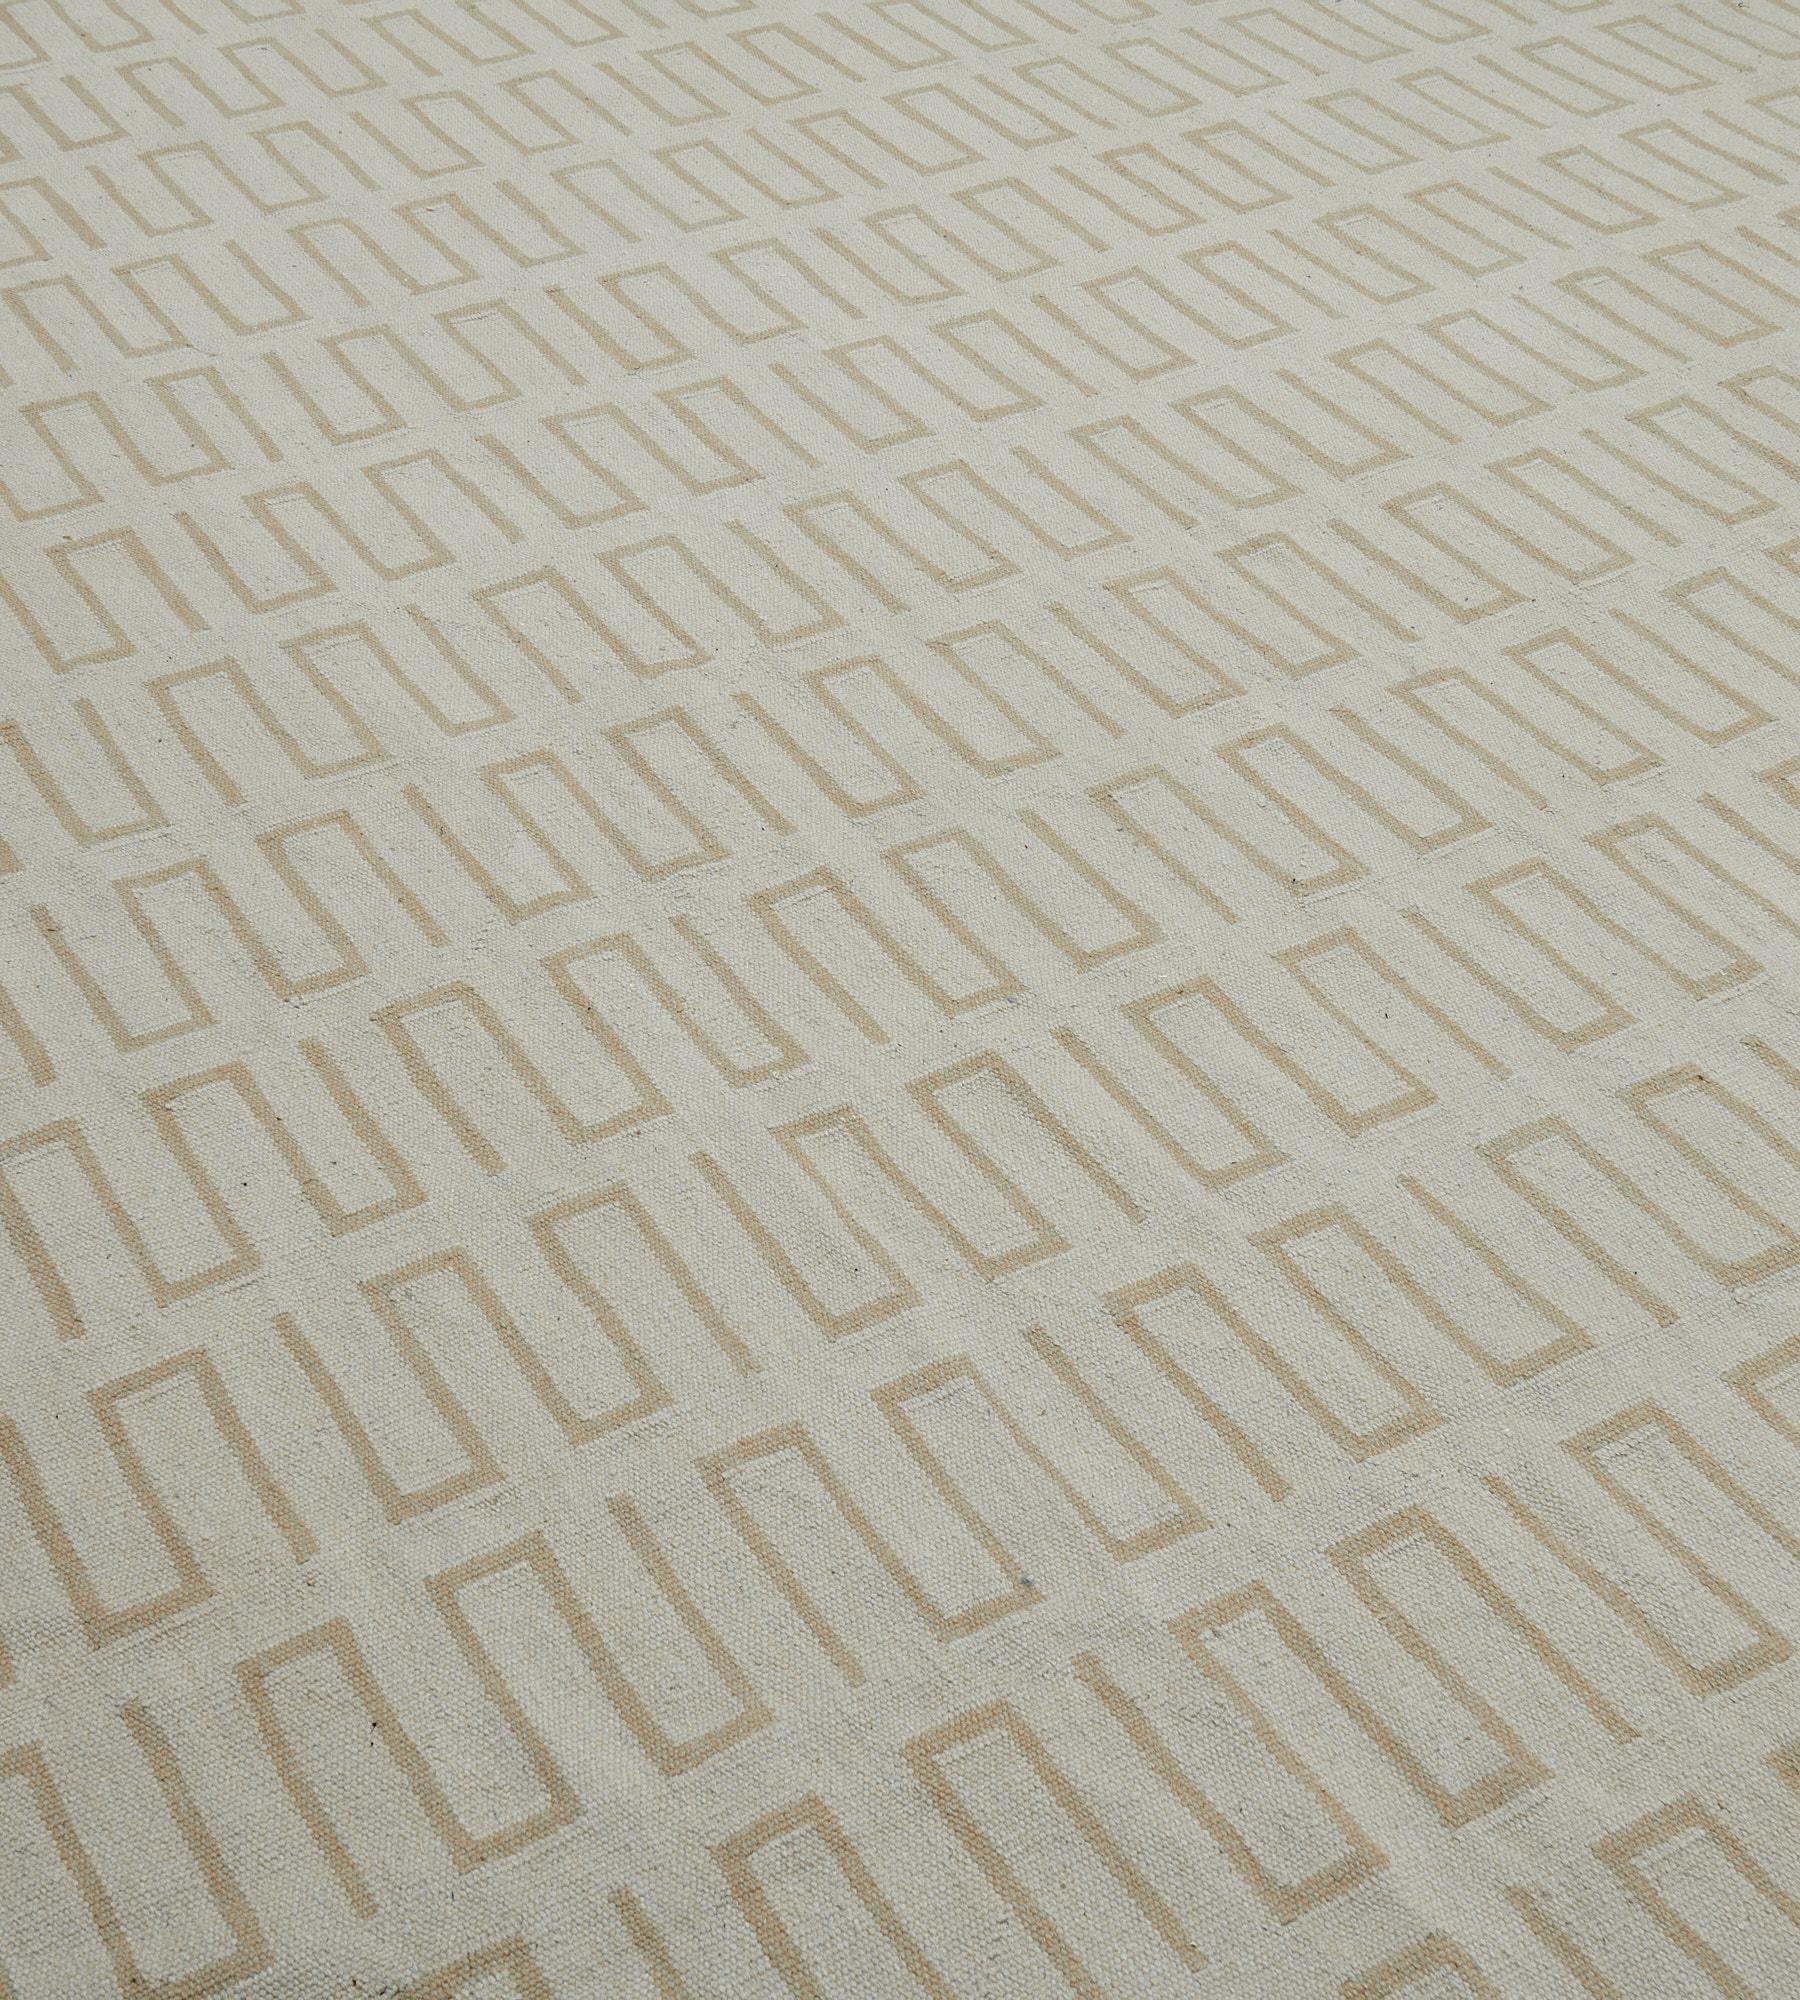 Faisant partie de la collection Mansour Modern, ce tapis Kilim est tissé à la main par des maîtres tisserands qui utilisent des techniques et des matériaux de la plus haute qualité. 